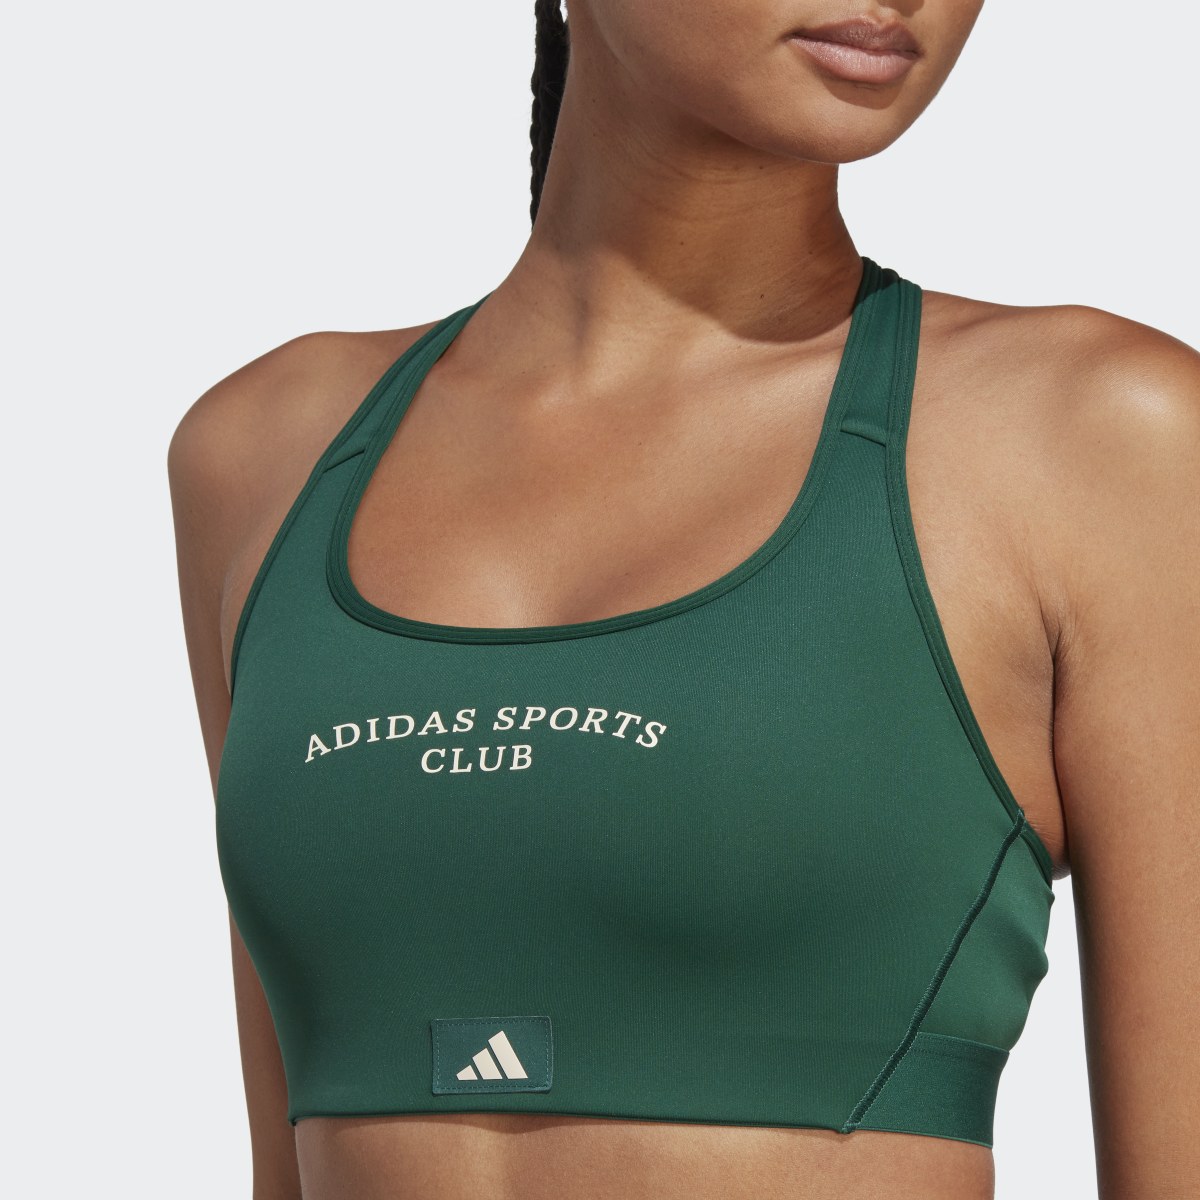 Adidas Sports Club Medium-Support Bra. 7